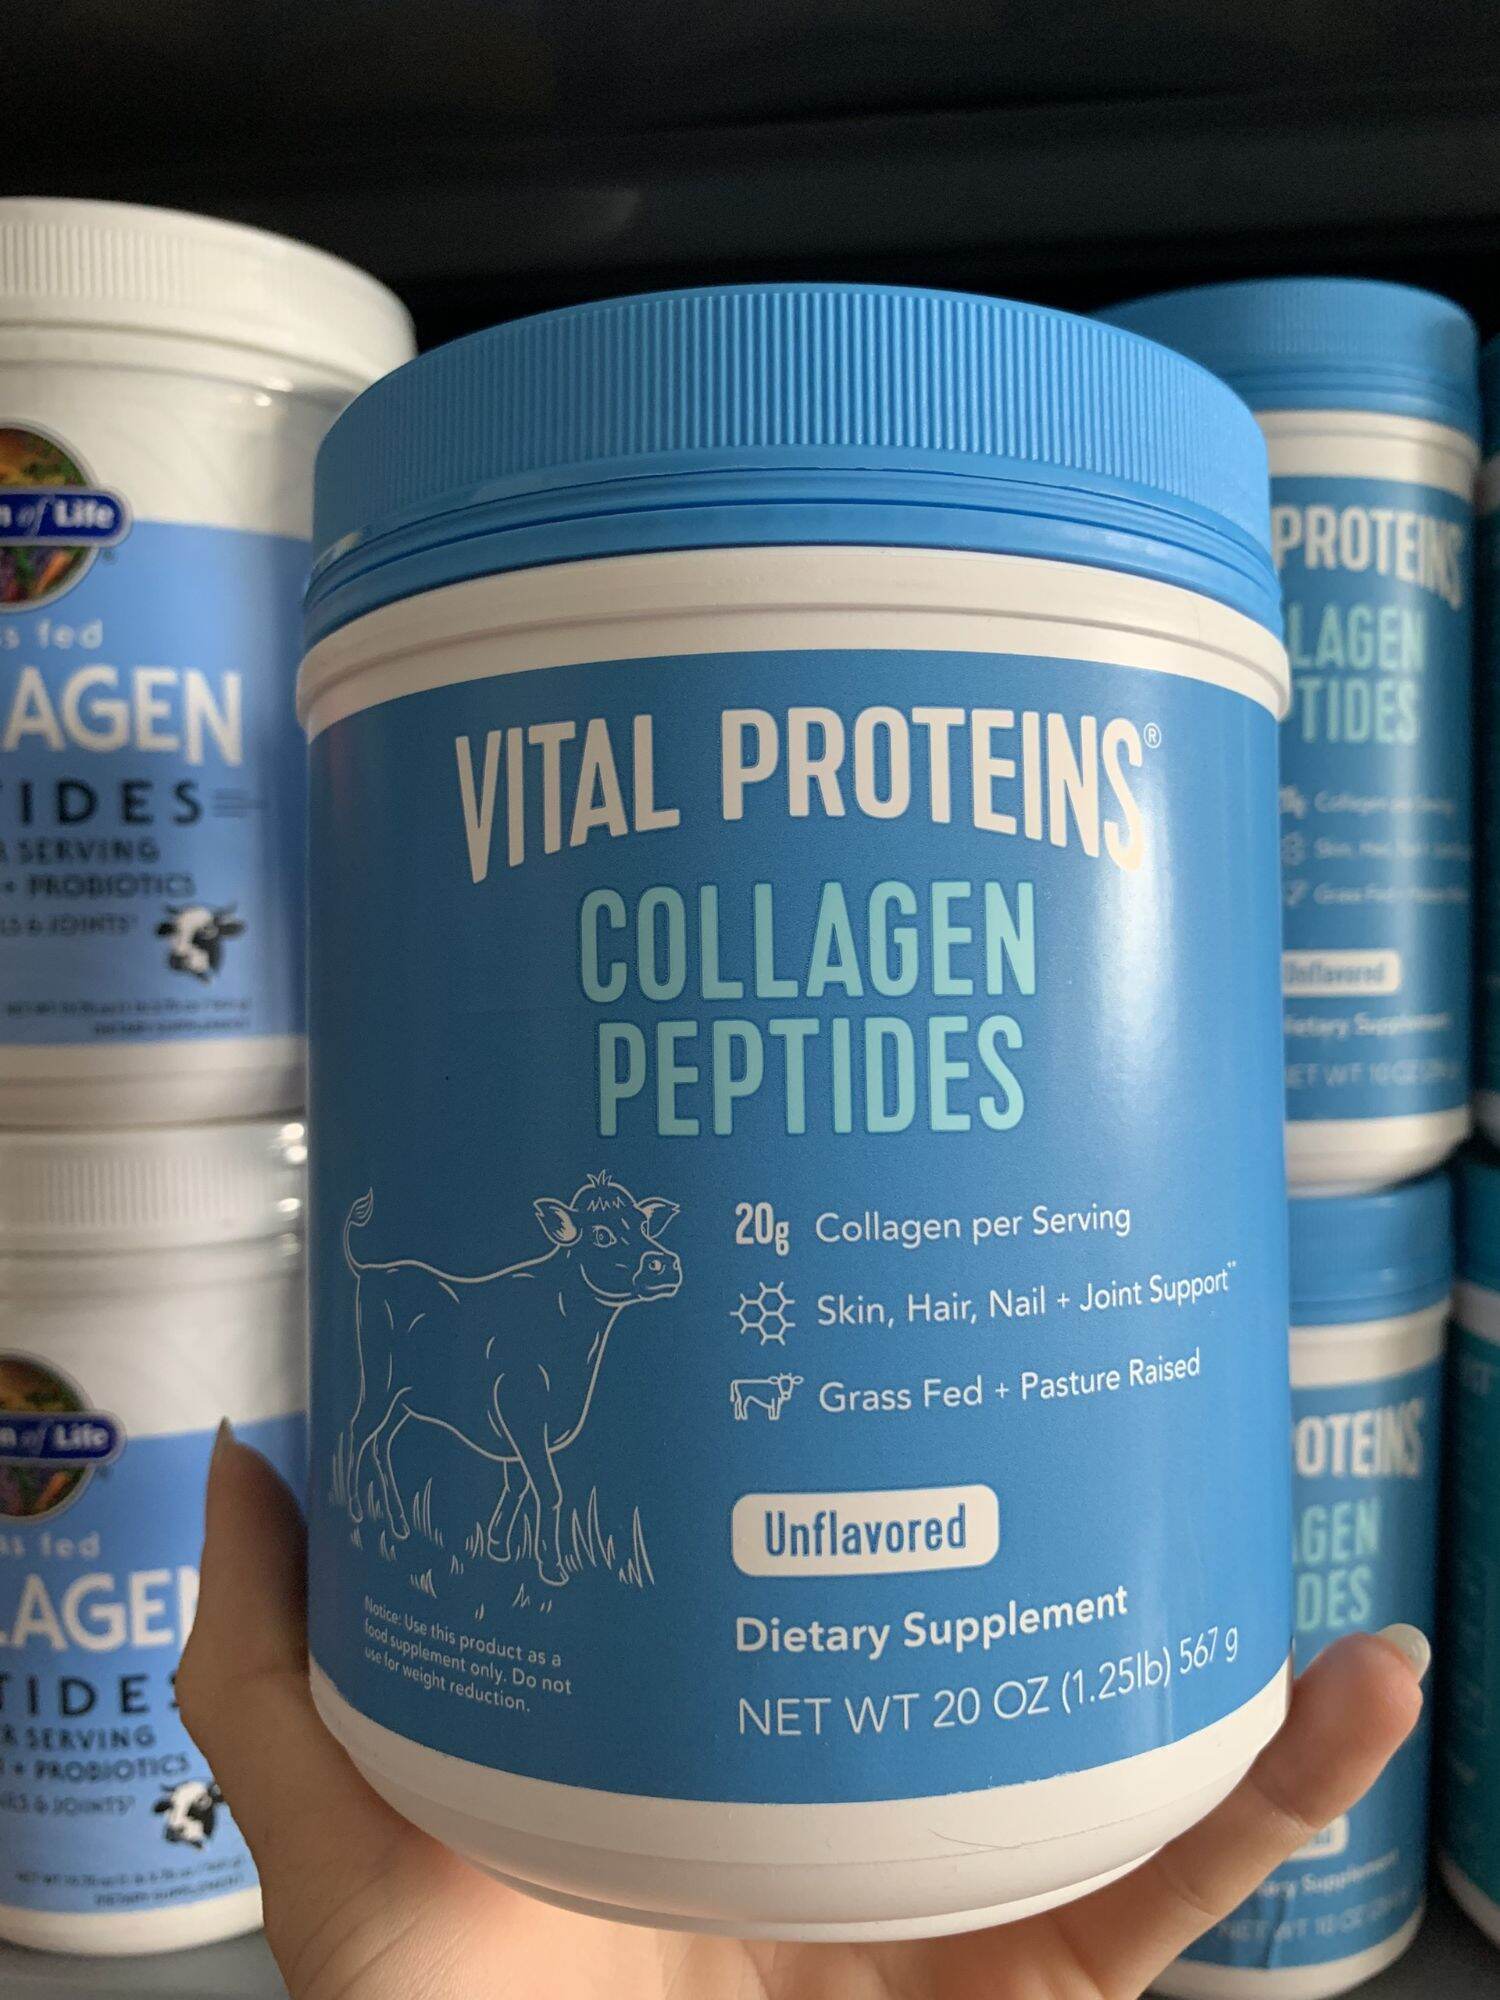 Bột uống vital proteins collagen peptides của mỹ- 567g - ảnh sản phẩm 1